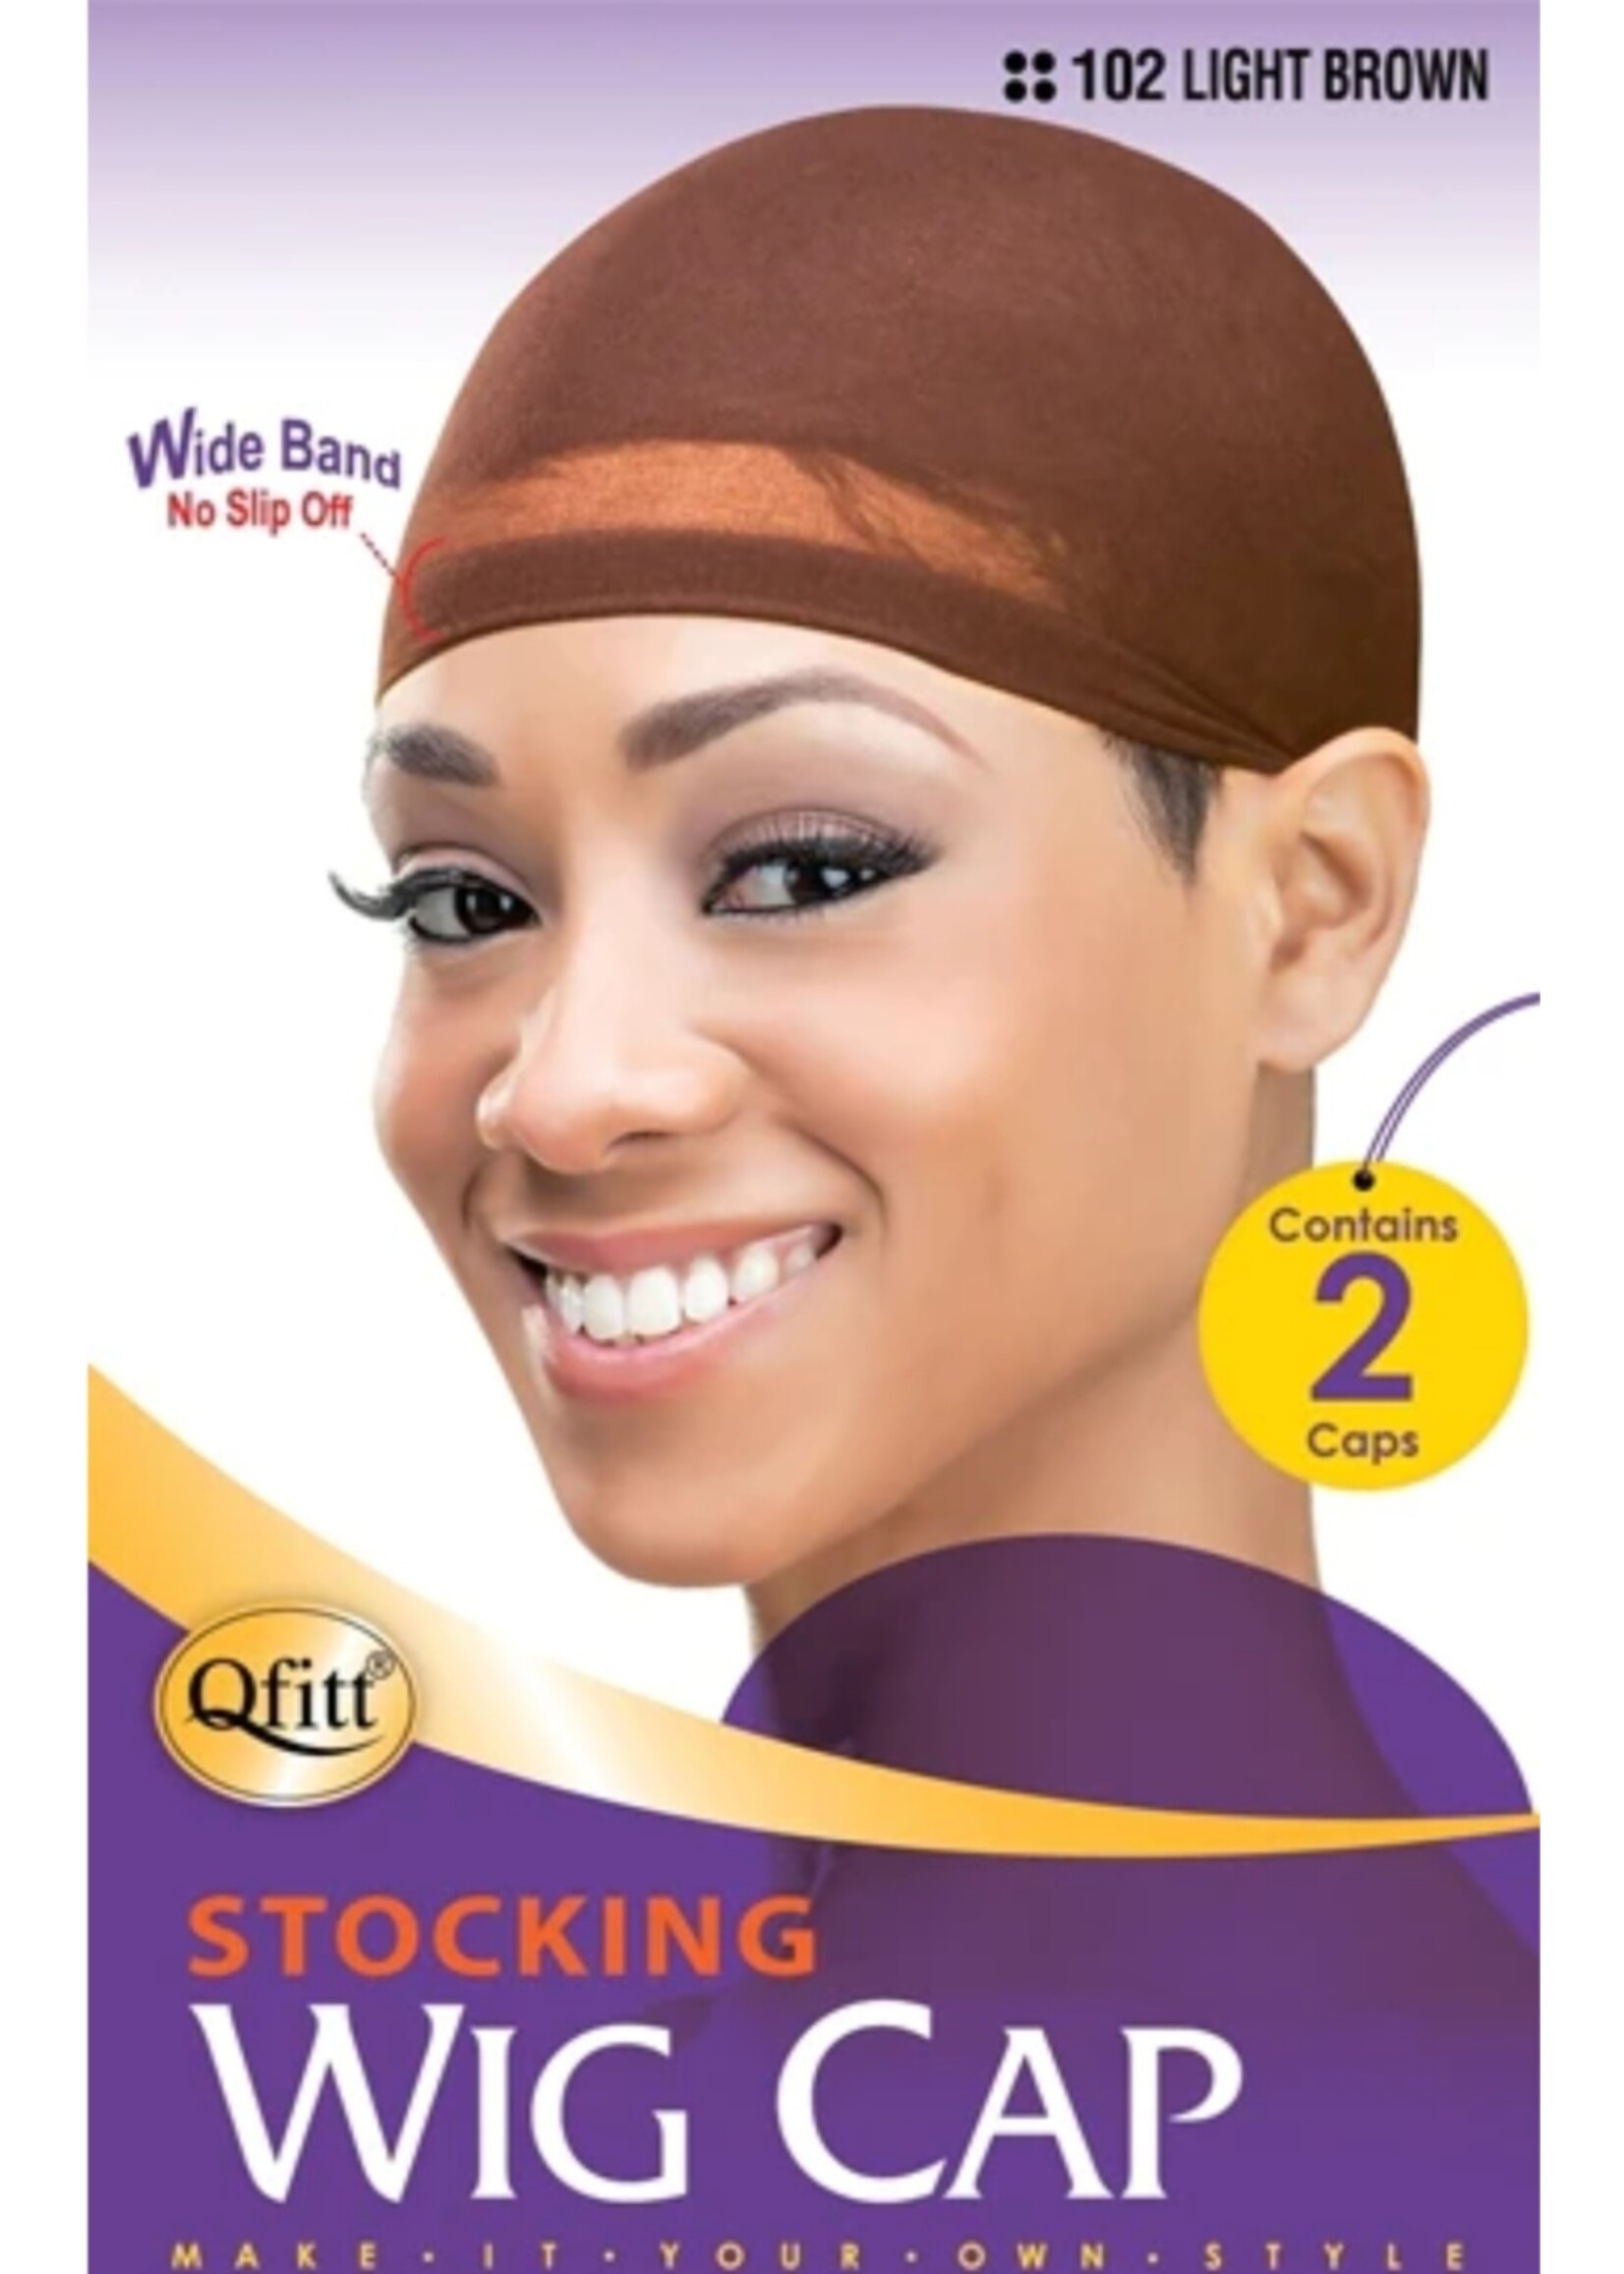 QFitt Wig Cap Light Brown #102